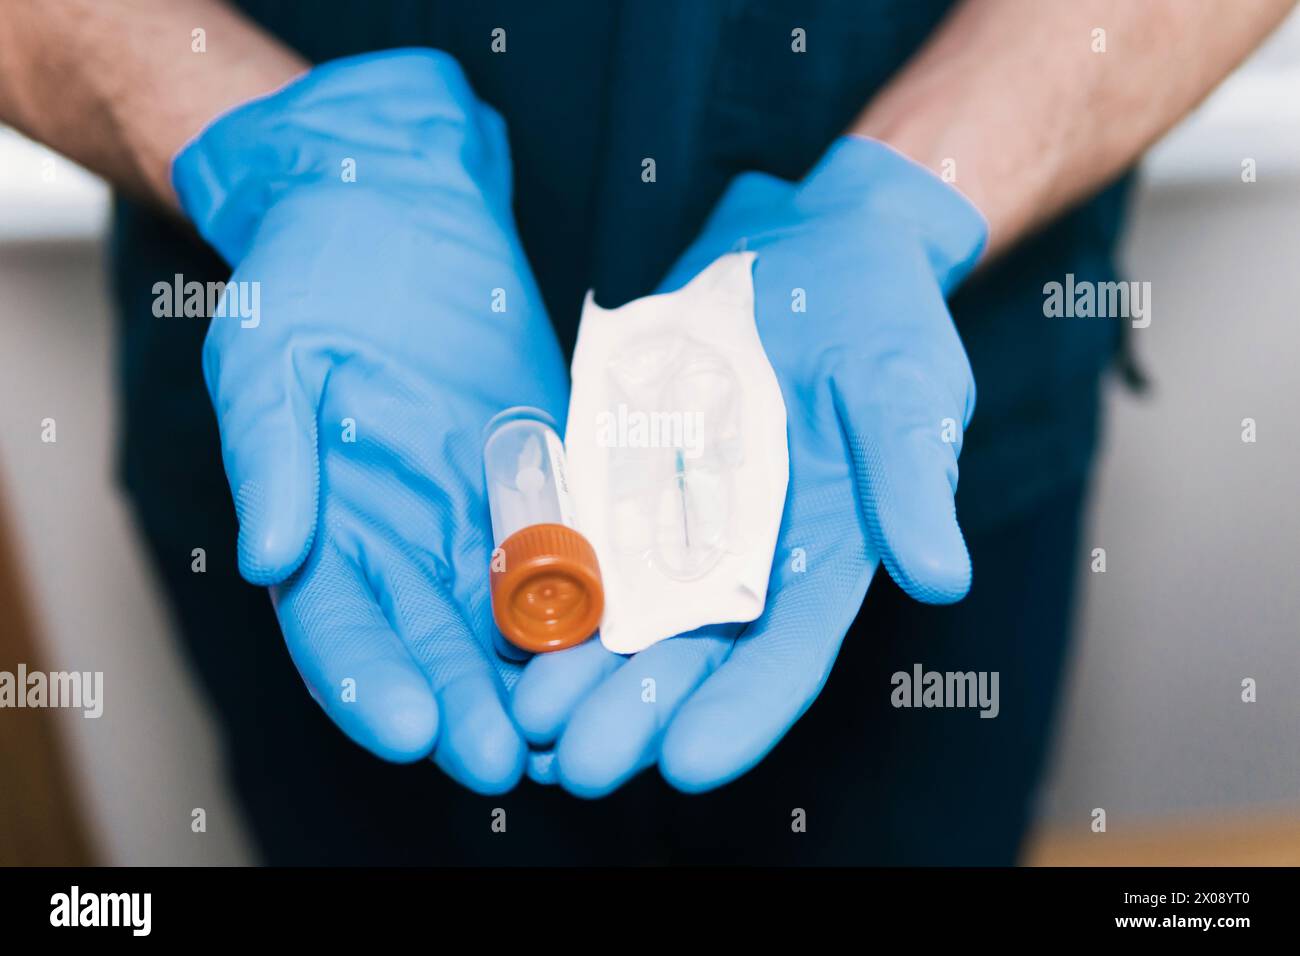 Primo piano di mani anonime con guanti che contengono una siringa medica sigillata e un flaconcino, pronti per la somministrazione sterile di farmaci Foto Stock